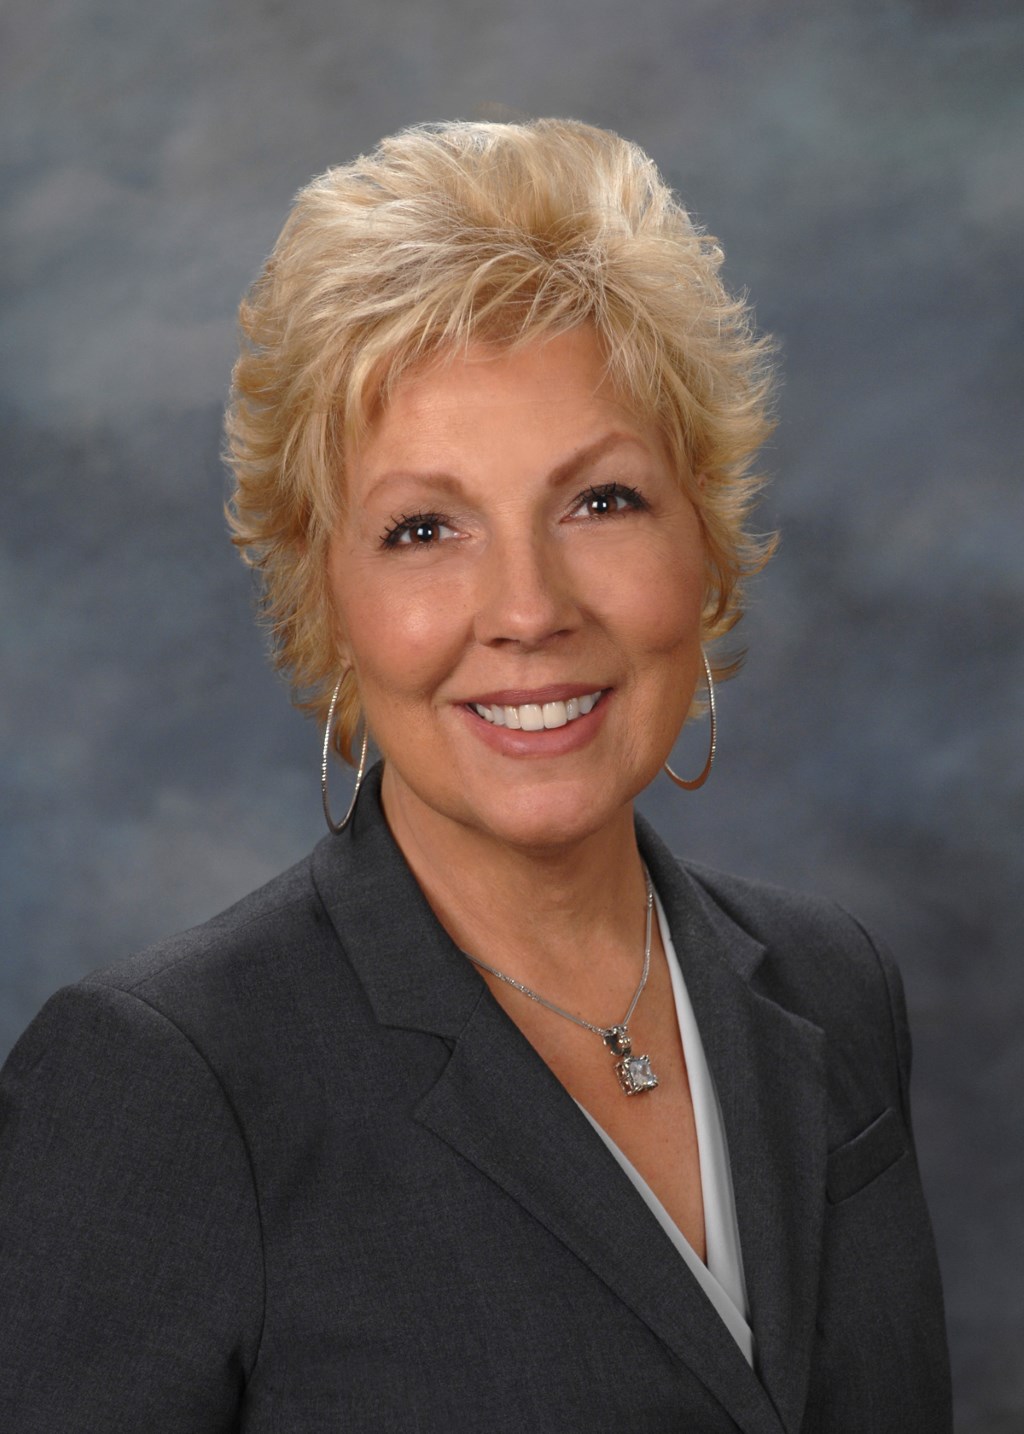 Nancy Major Assumes Leadership at Daystar Inc. as President, Chief Executive Officer